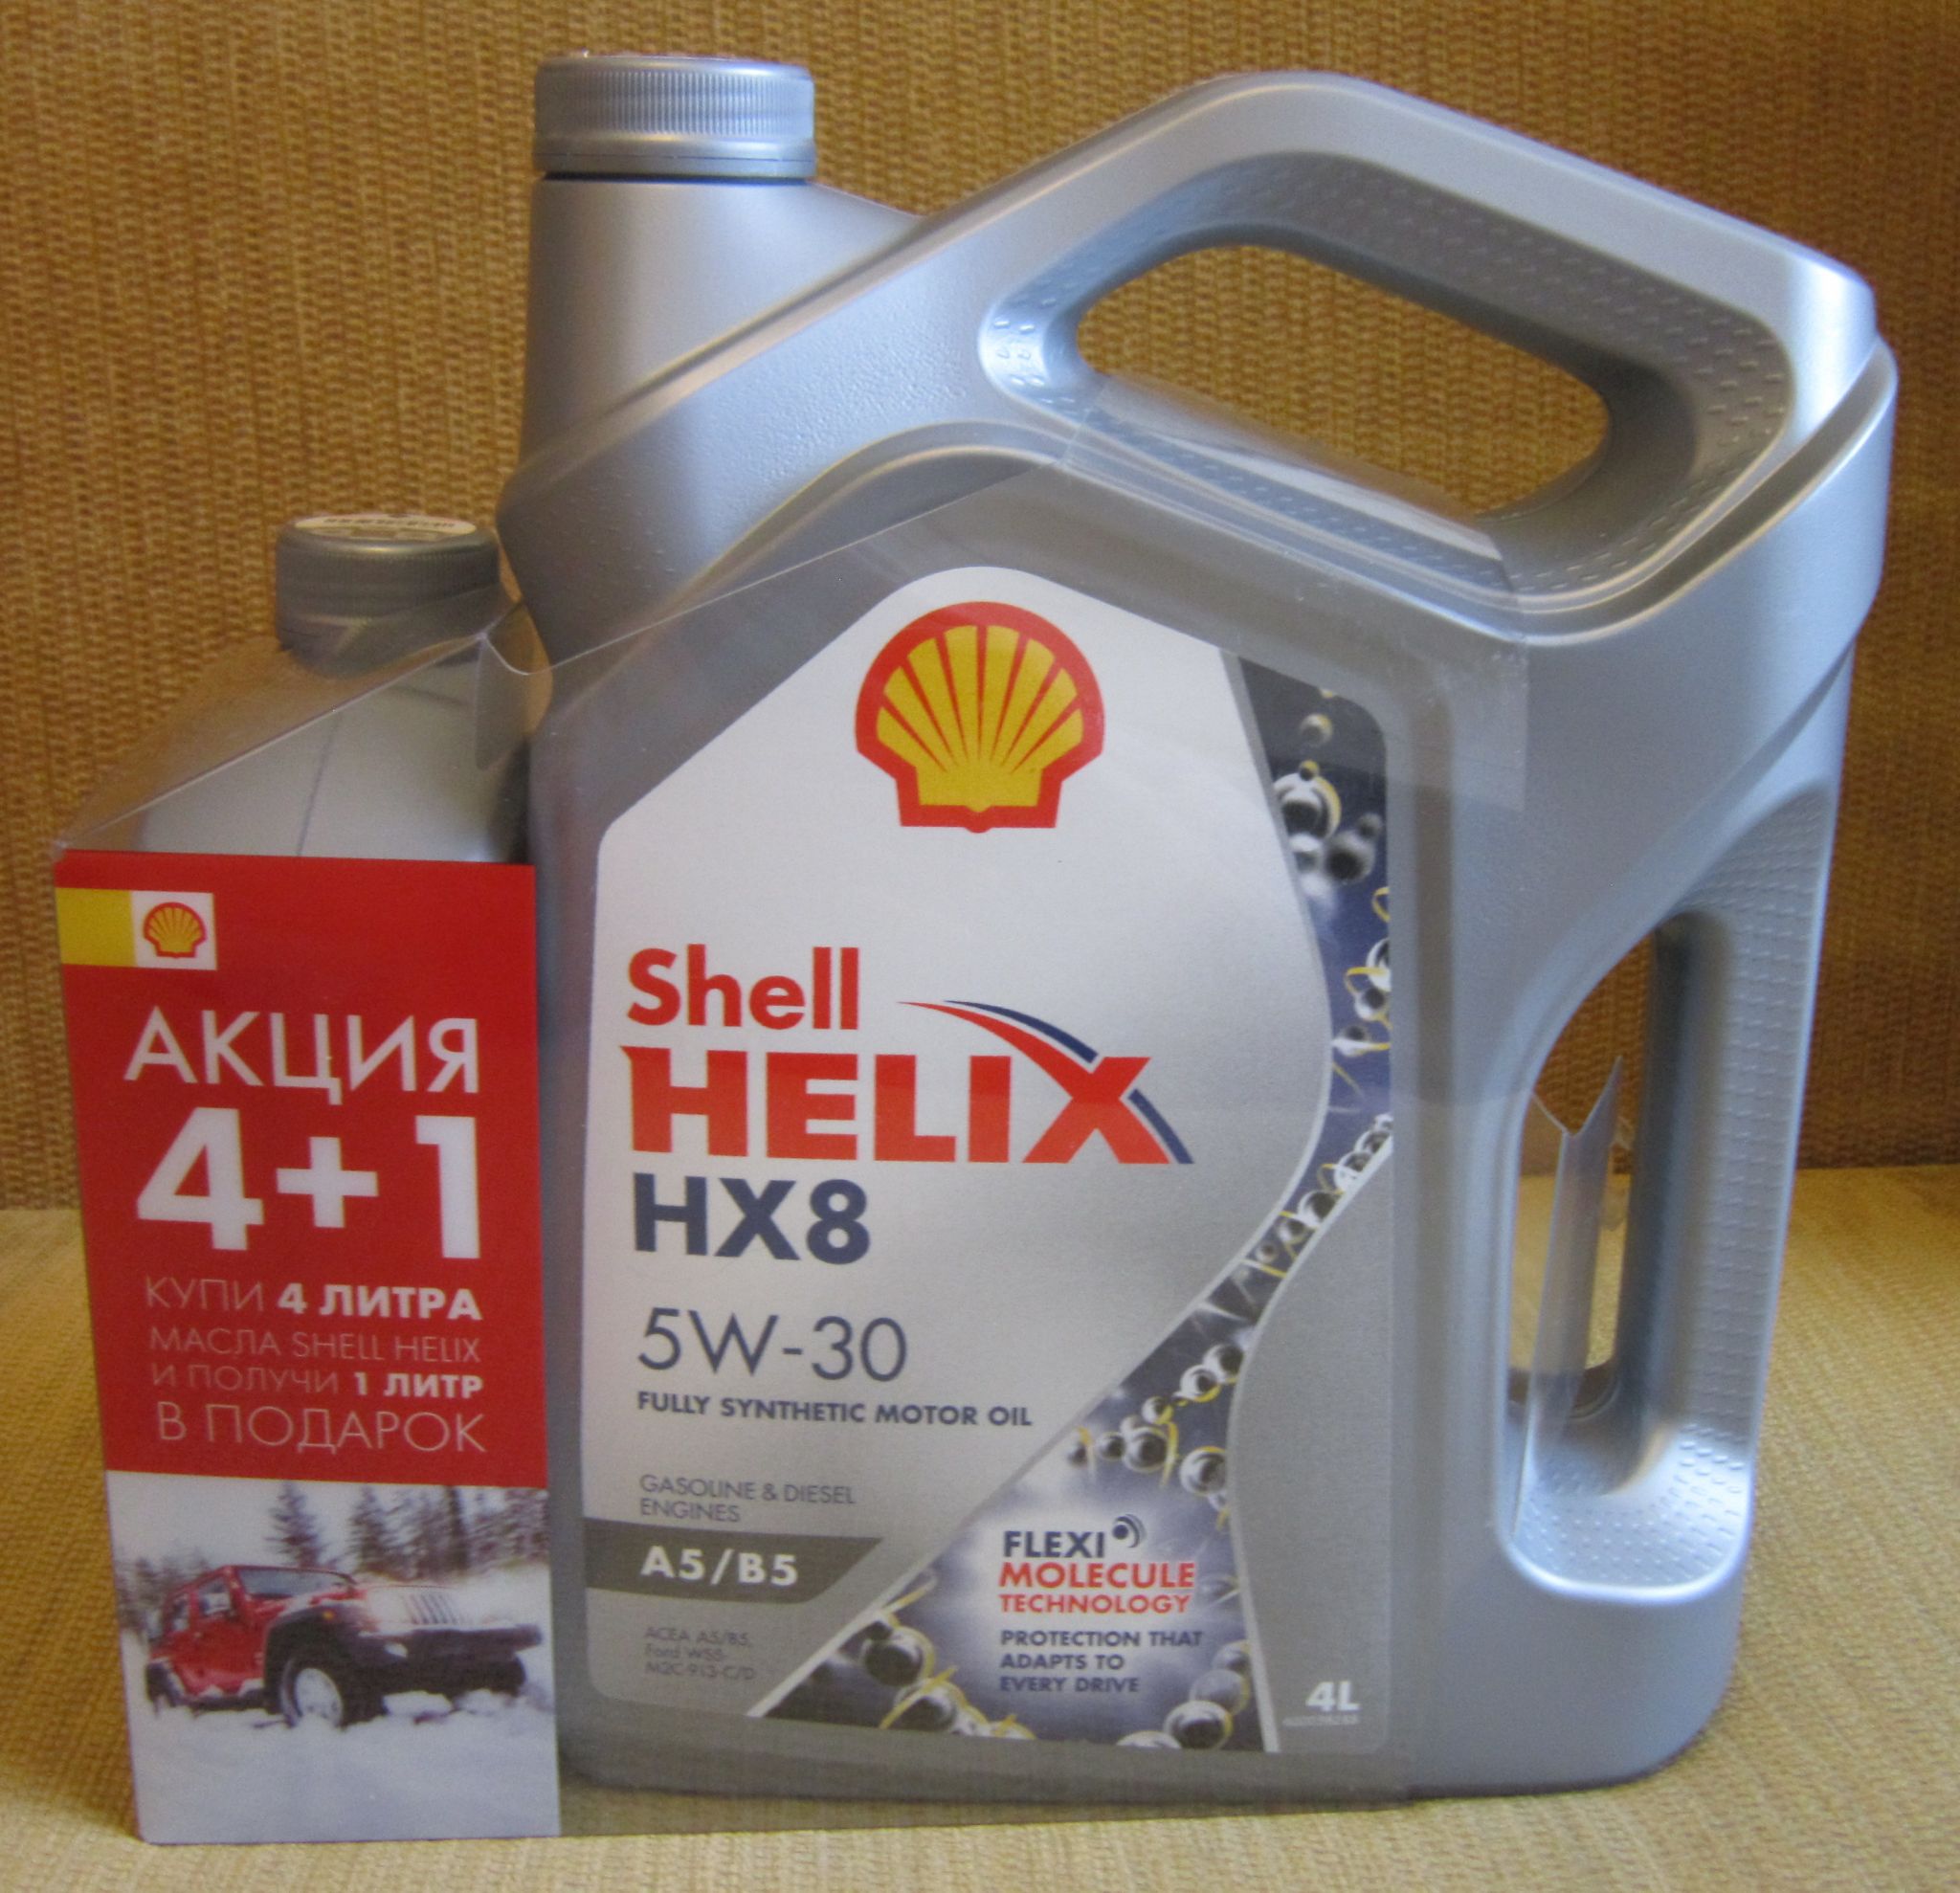 Масло helix hx8 5w 30. Shell hx8 5w30. Shell hx8 5w30 a5/b5. Моторное масло синтетическое Shell Helix hx8 a5/b5 5w-30. Моторное масло Shell Helix hx8 a5/b5 5w-30 синтетическое 4 л.